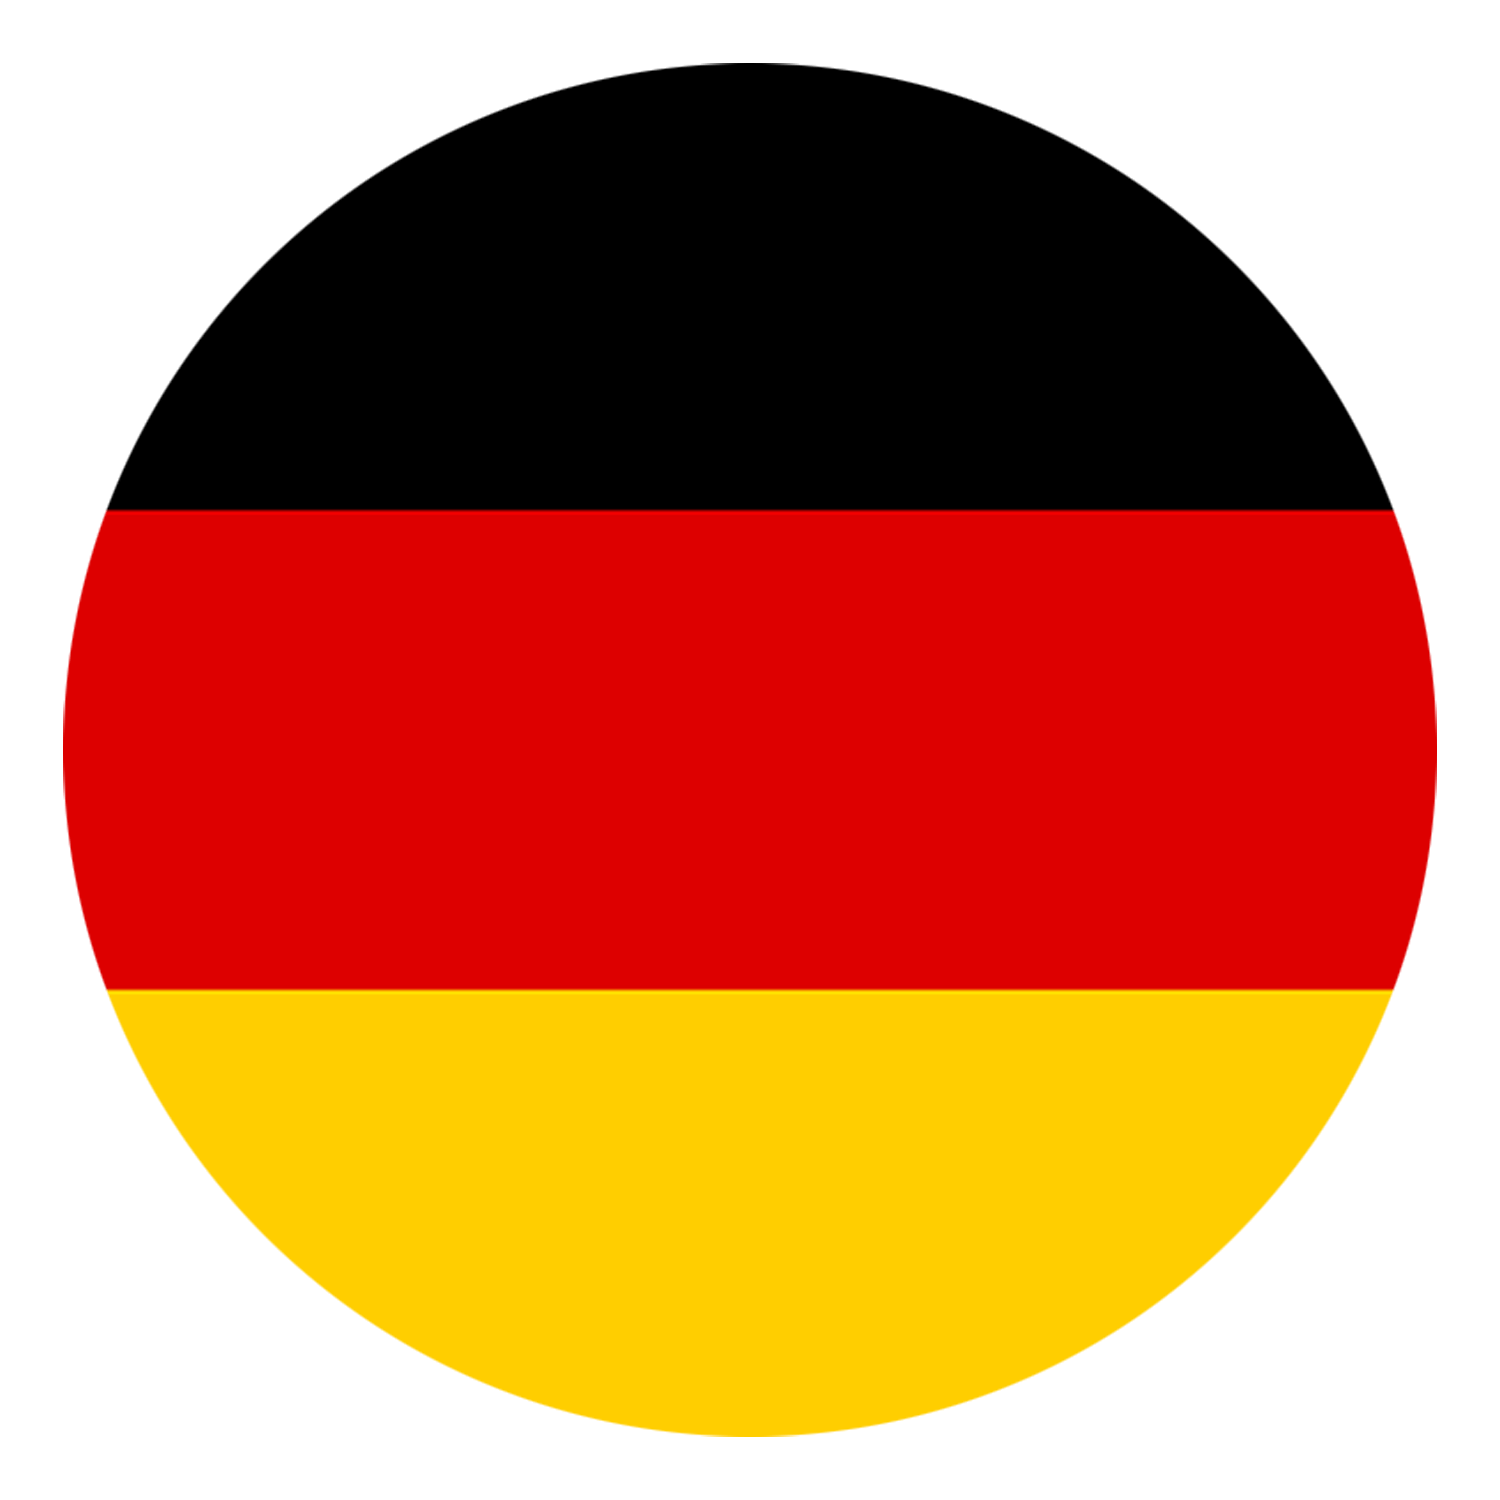 deutschland